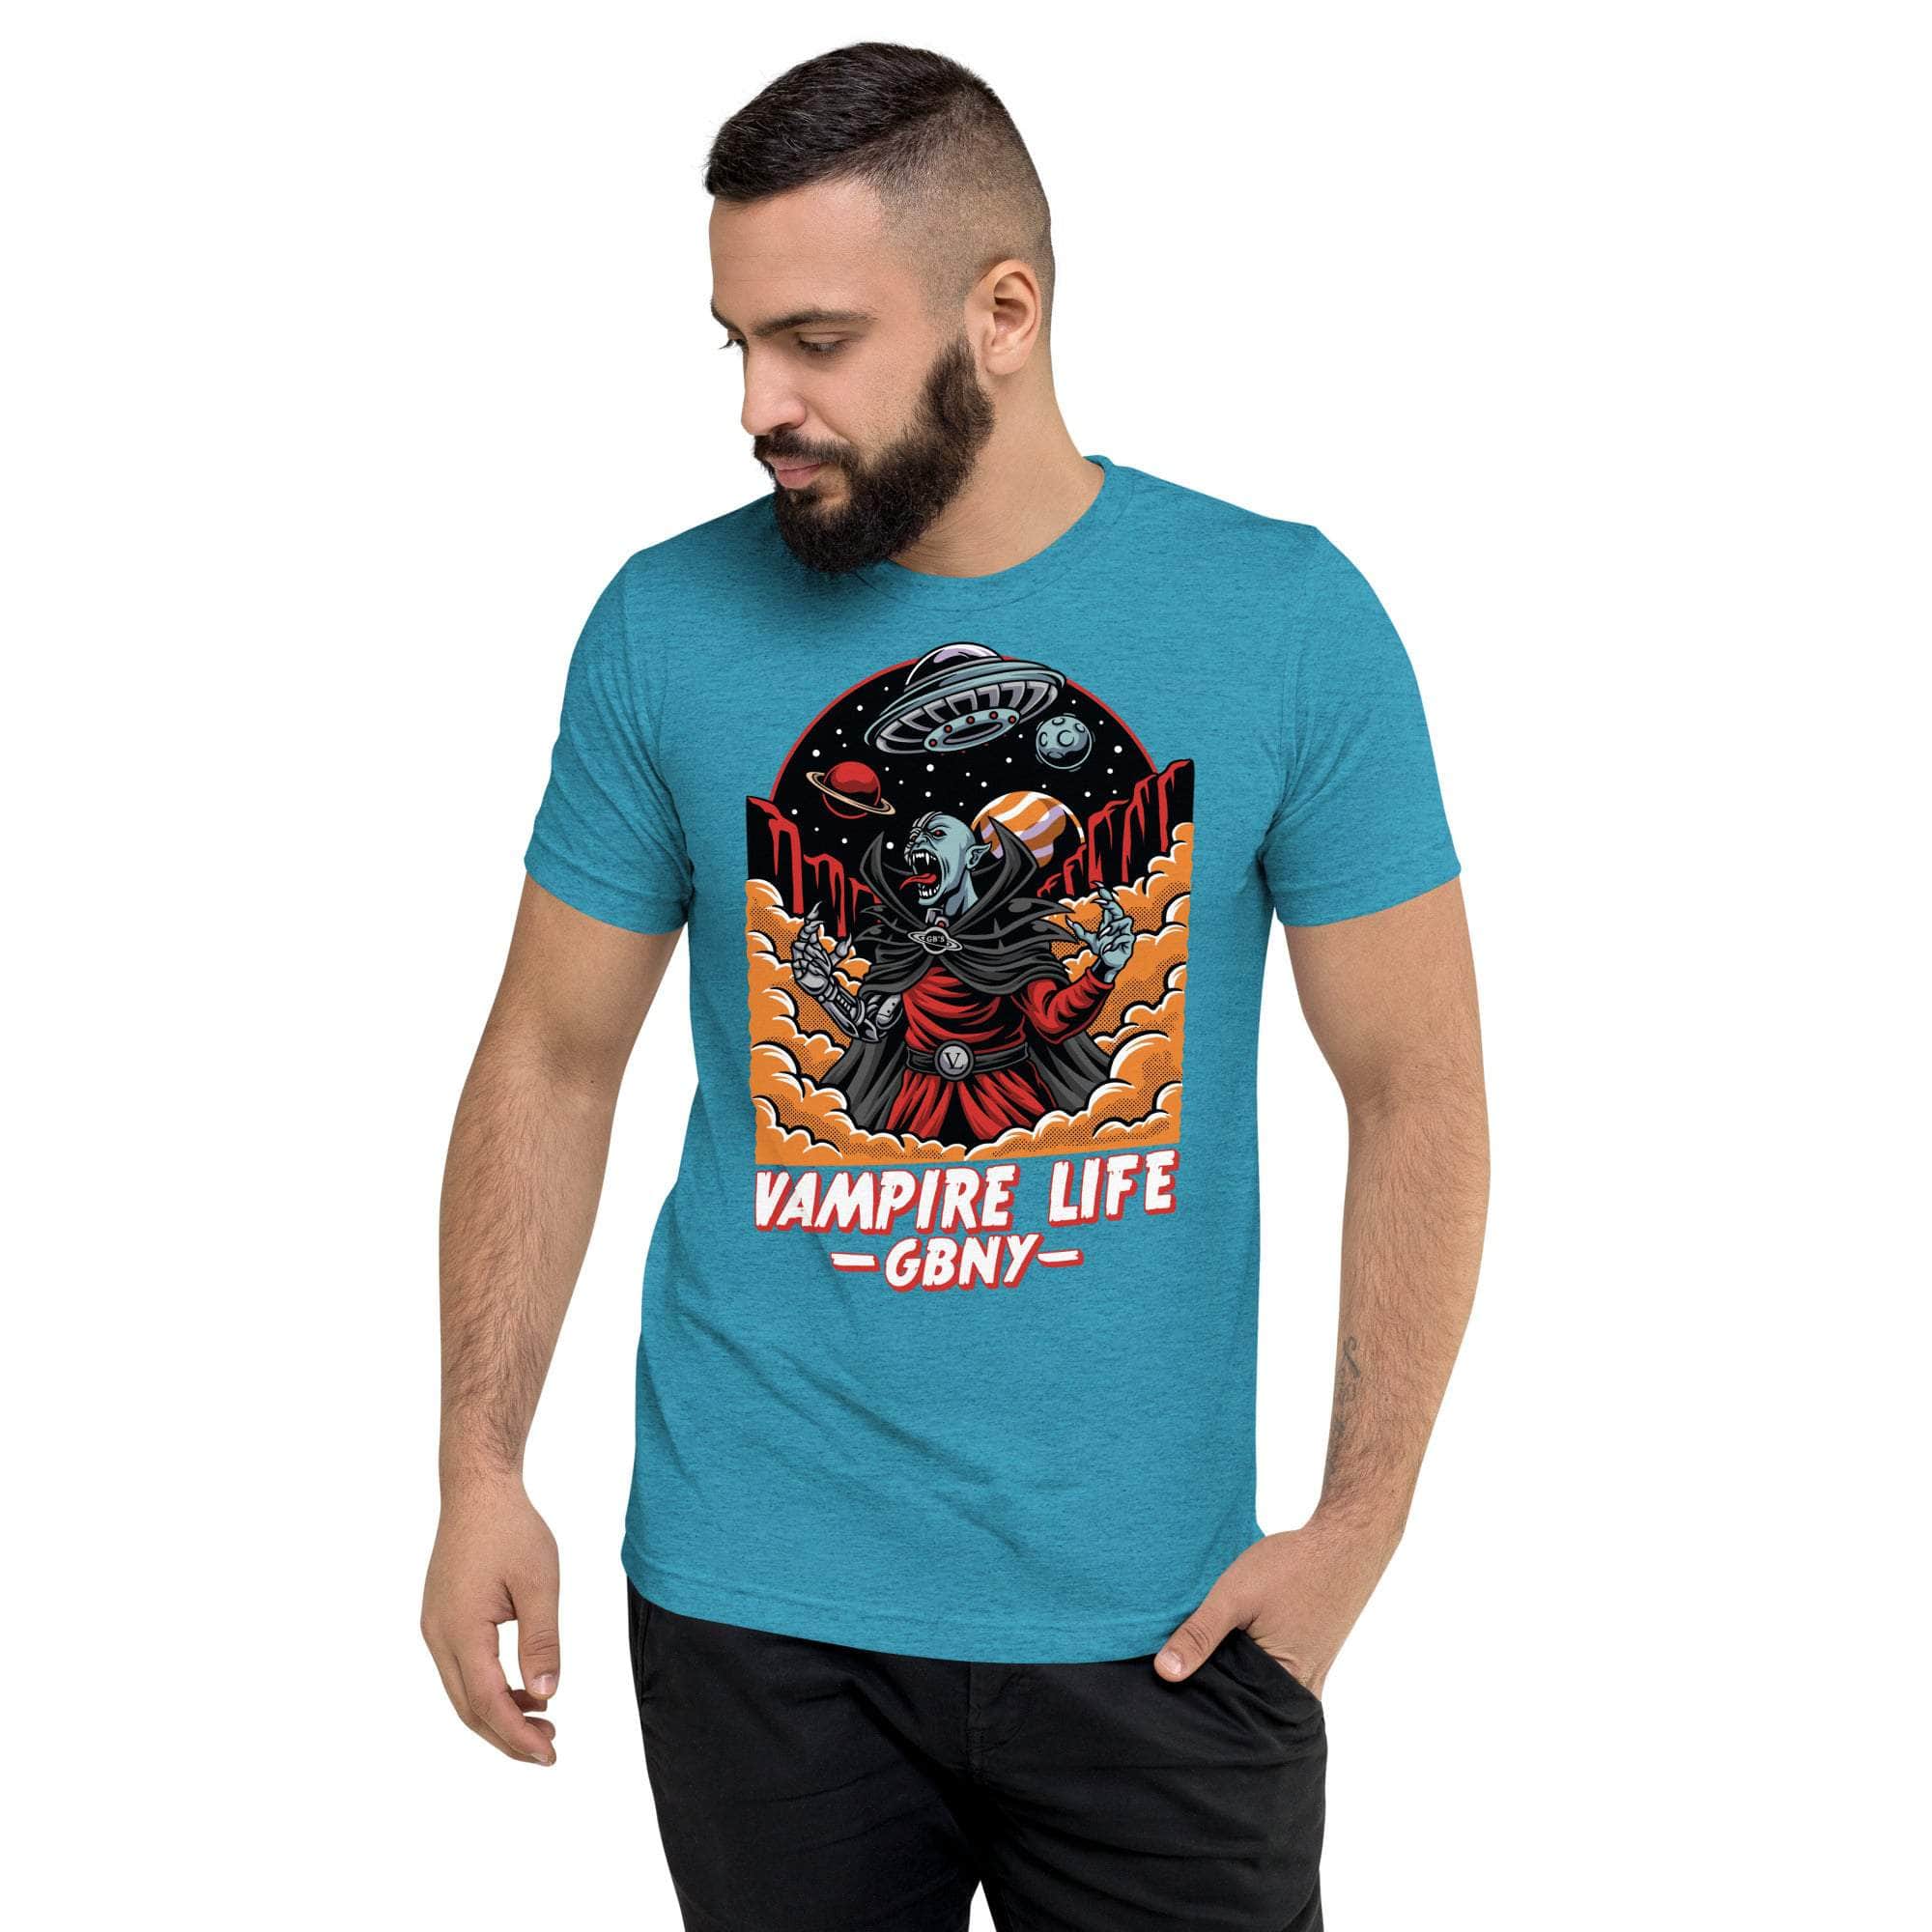 GBNY Aqua Triblend / XS Vamp Life X GBNY "Space Vampire" T-shirt - Men's 3872353_6464